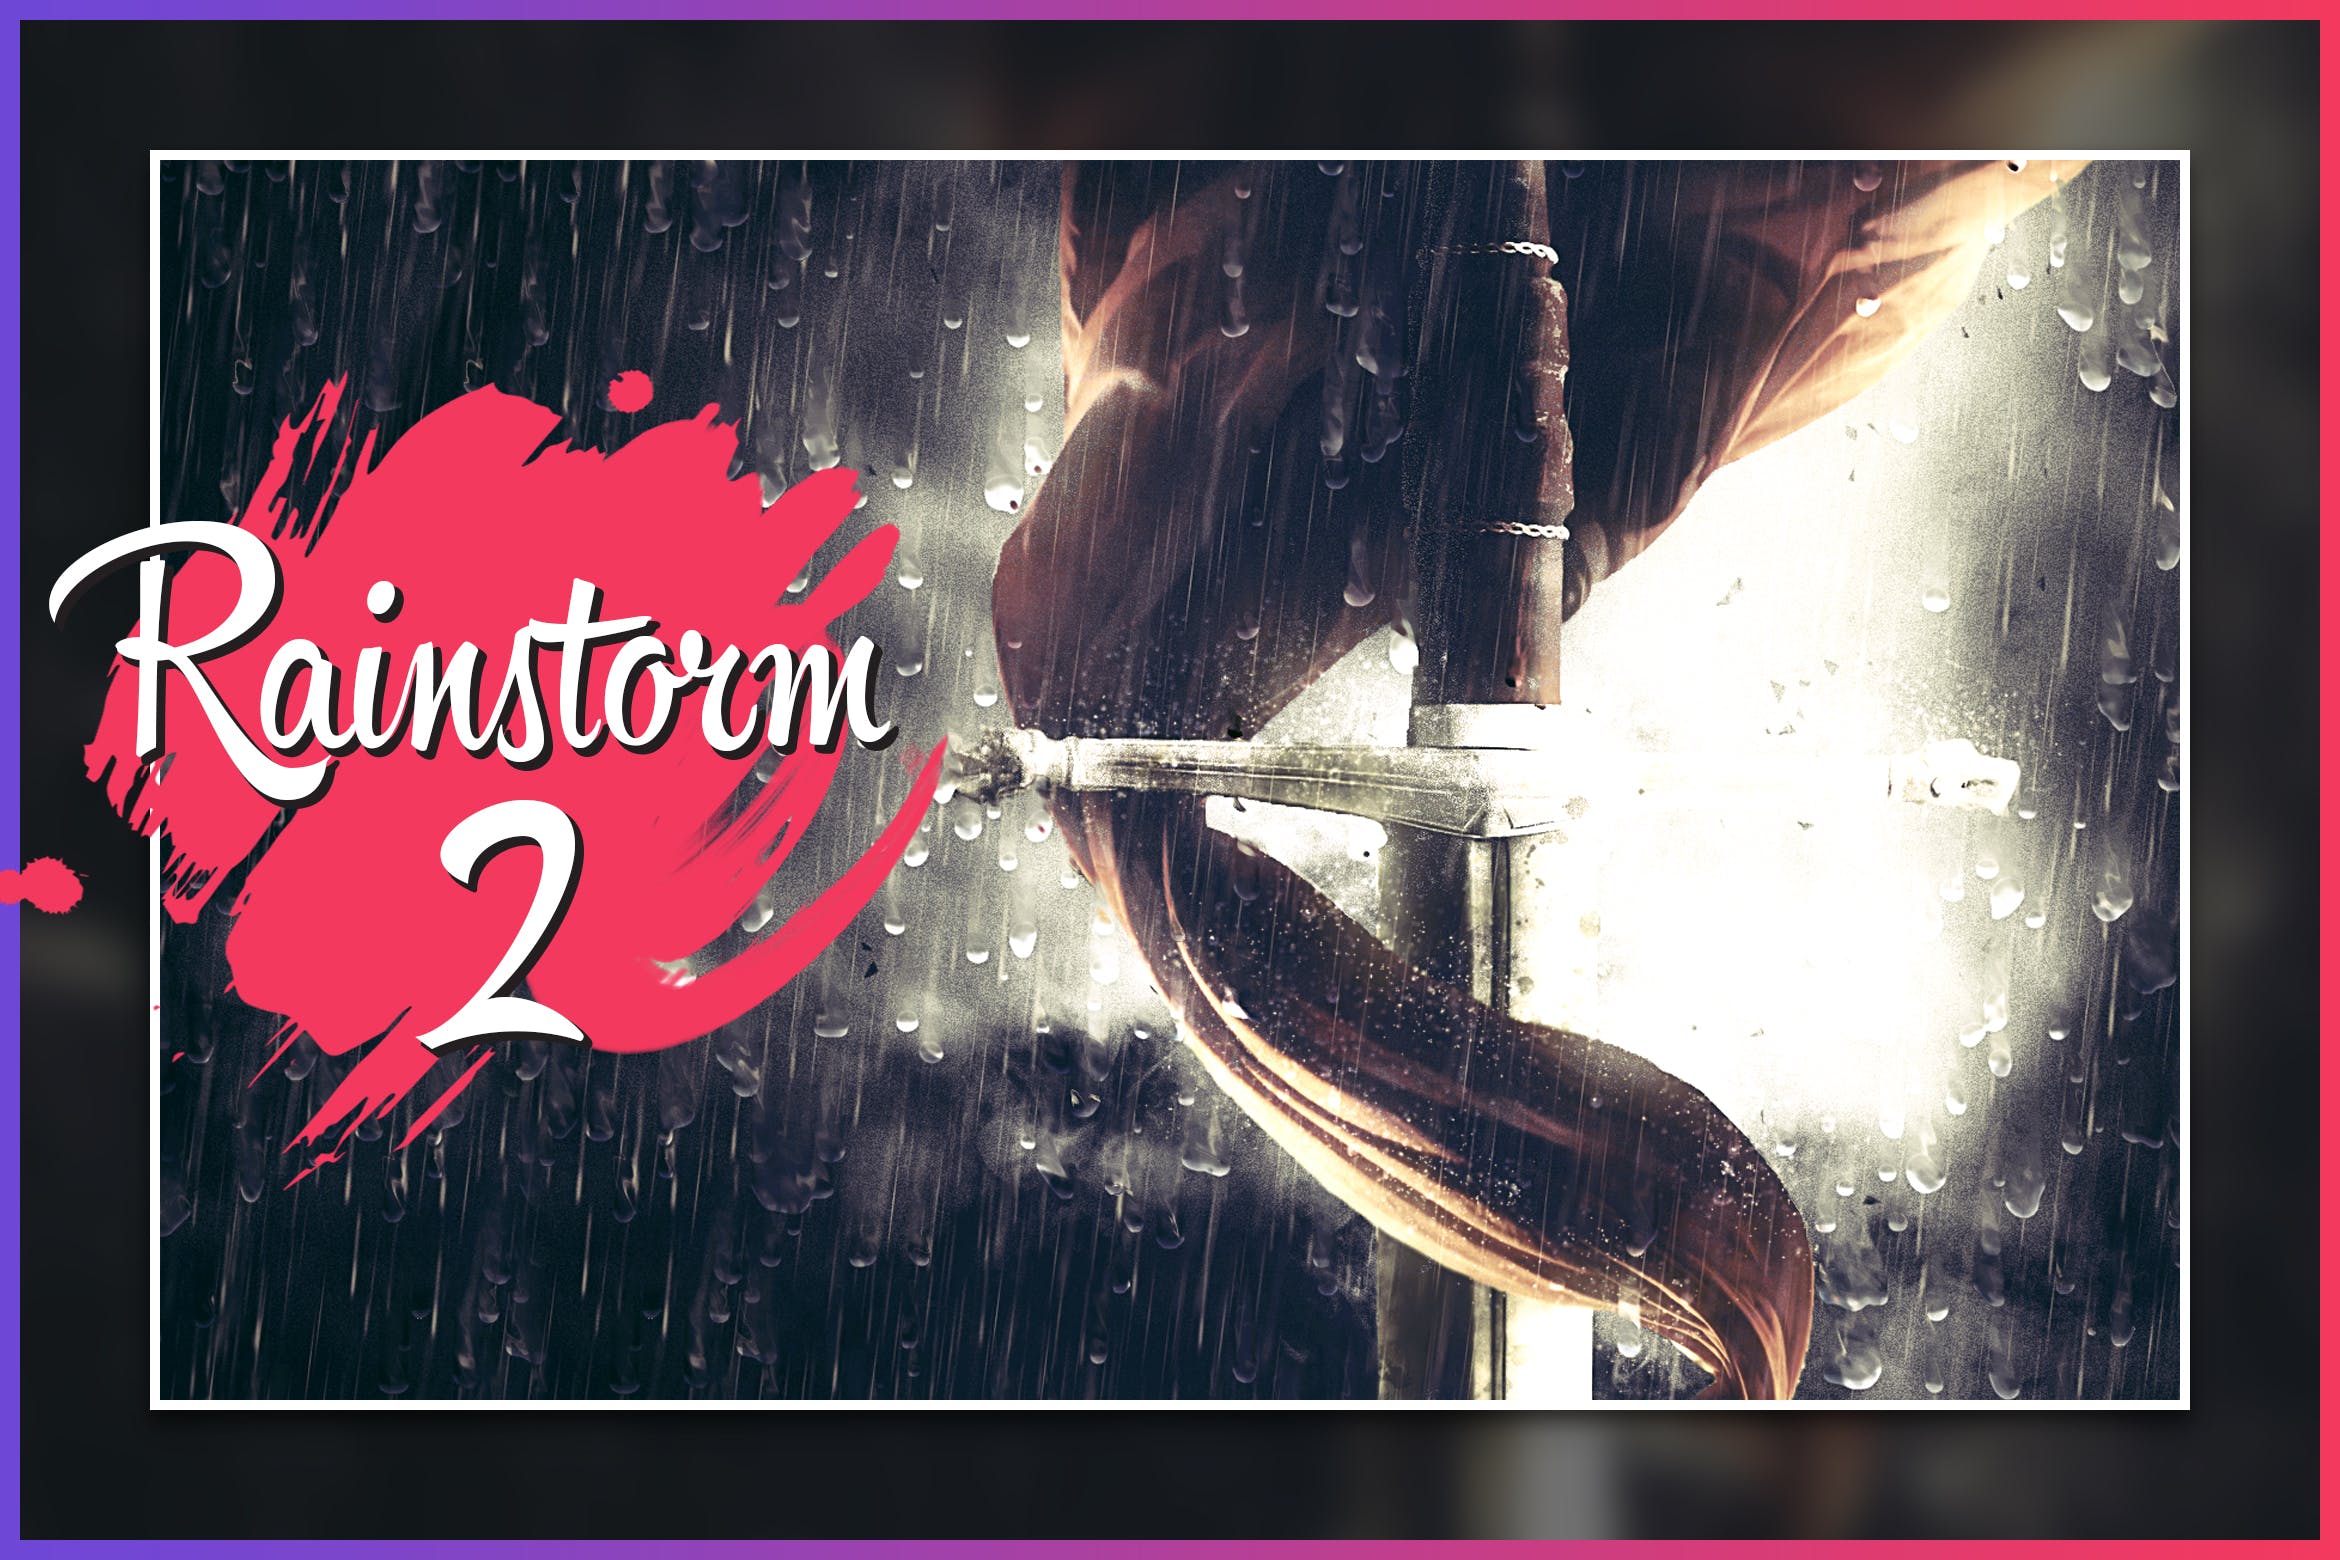 暴风雨照片背景特效蚂蚁素材精选PS动作 Rainstorm 2 CS4+ Photoshop Action插图